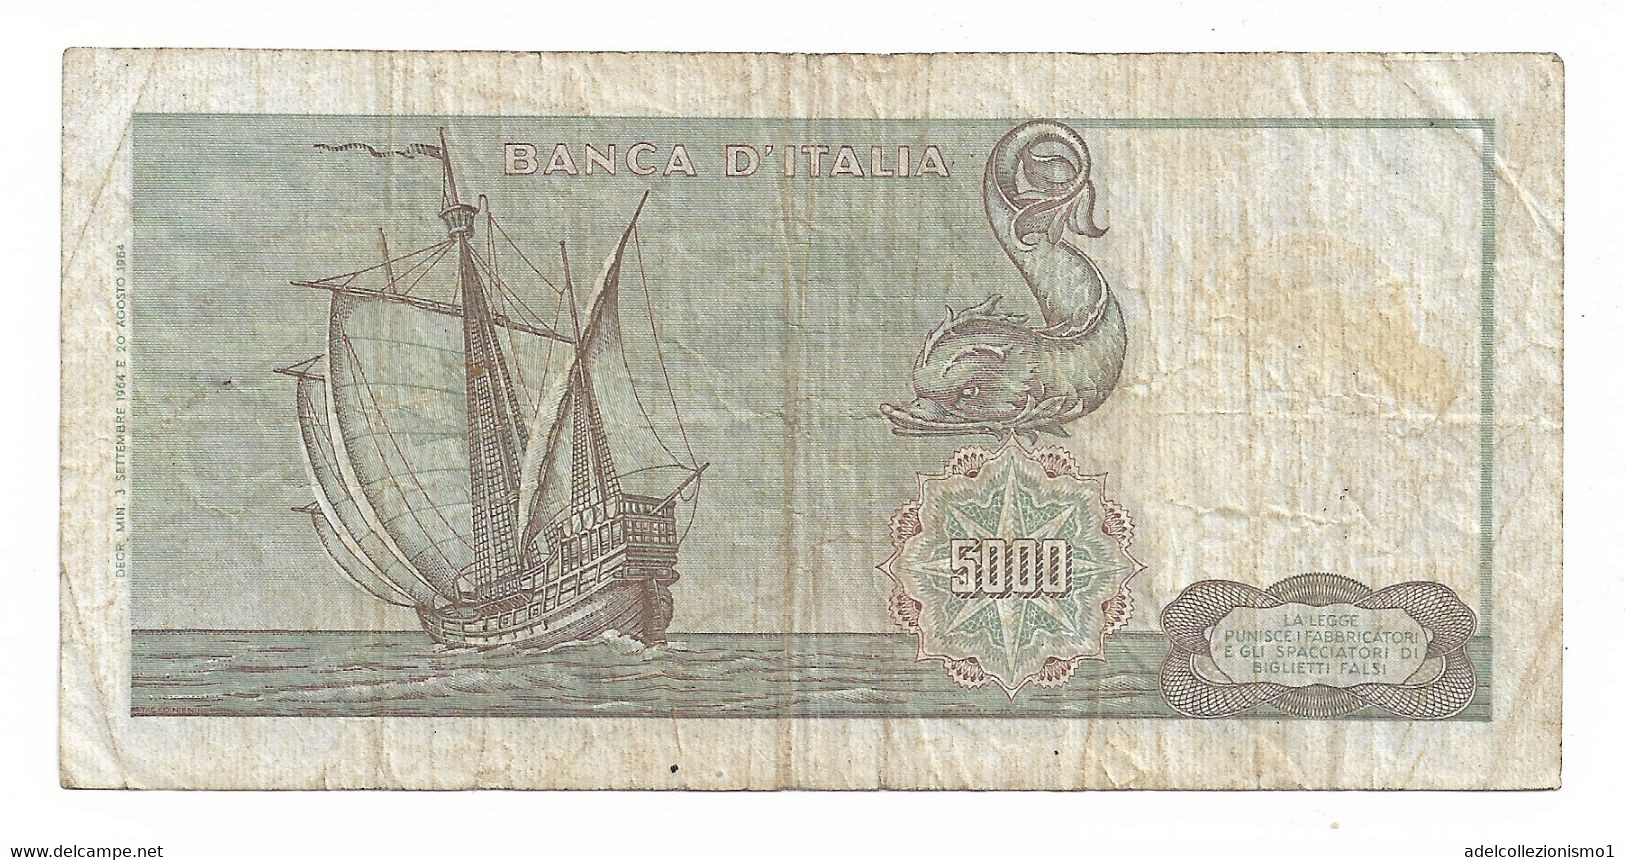 29649) 500 LIRE ITALIA ORNATA DI SPIGHE MEDUSA DECR 23 MARZO 1961- - 500 Lire